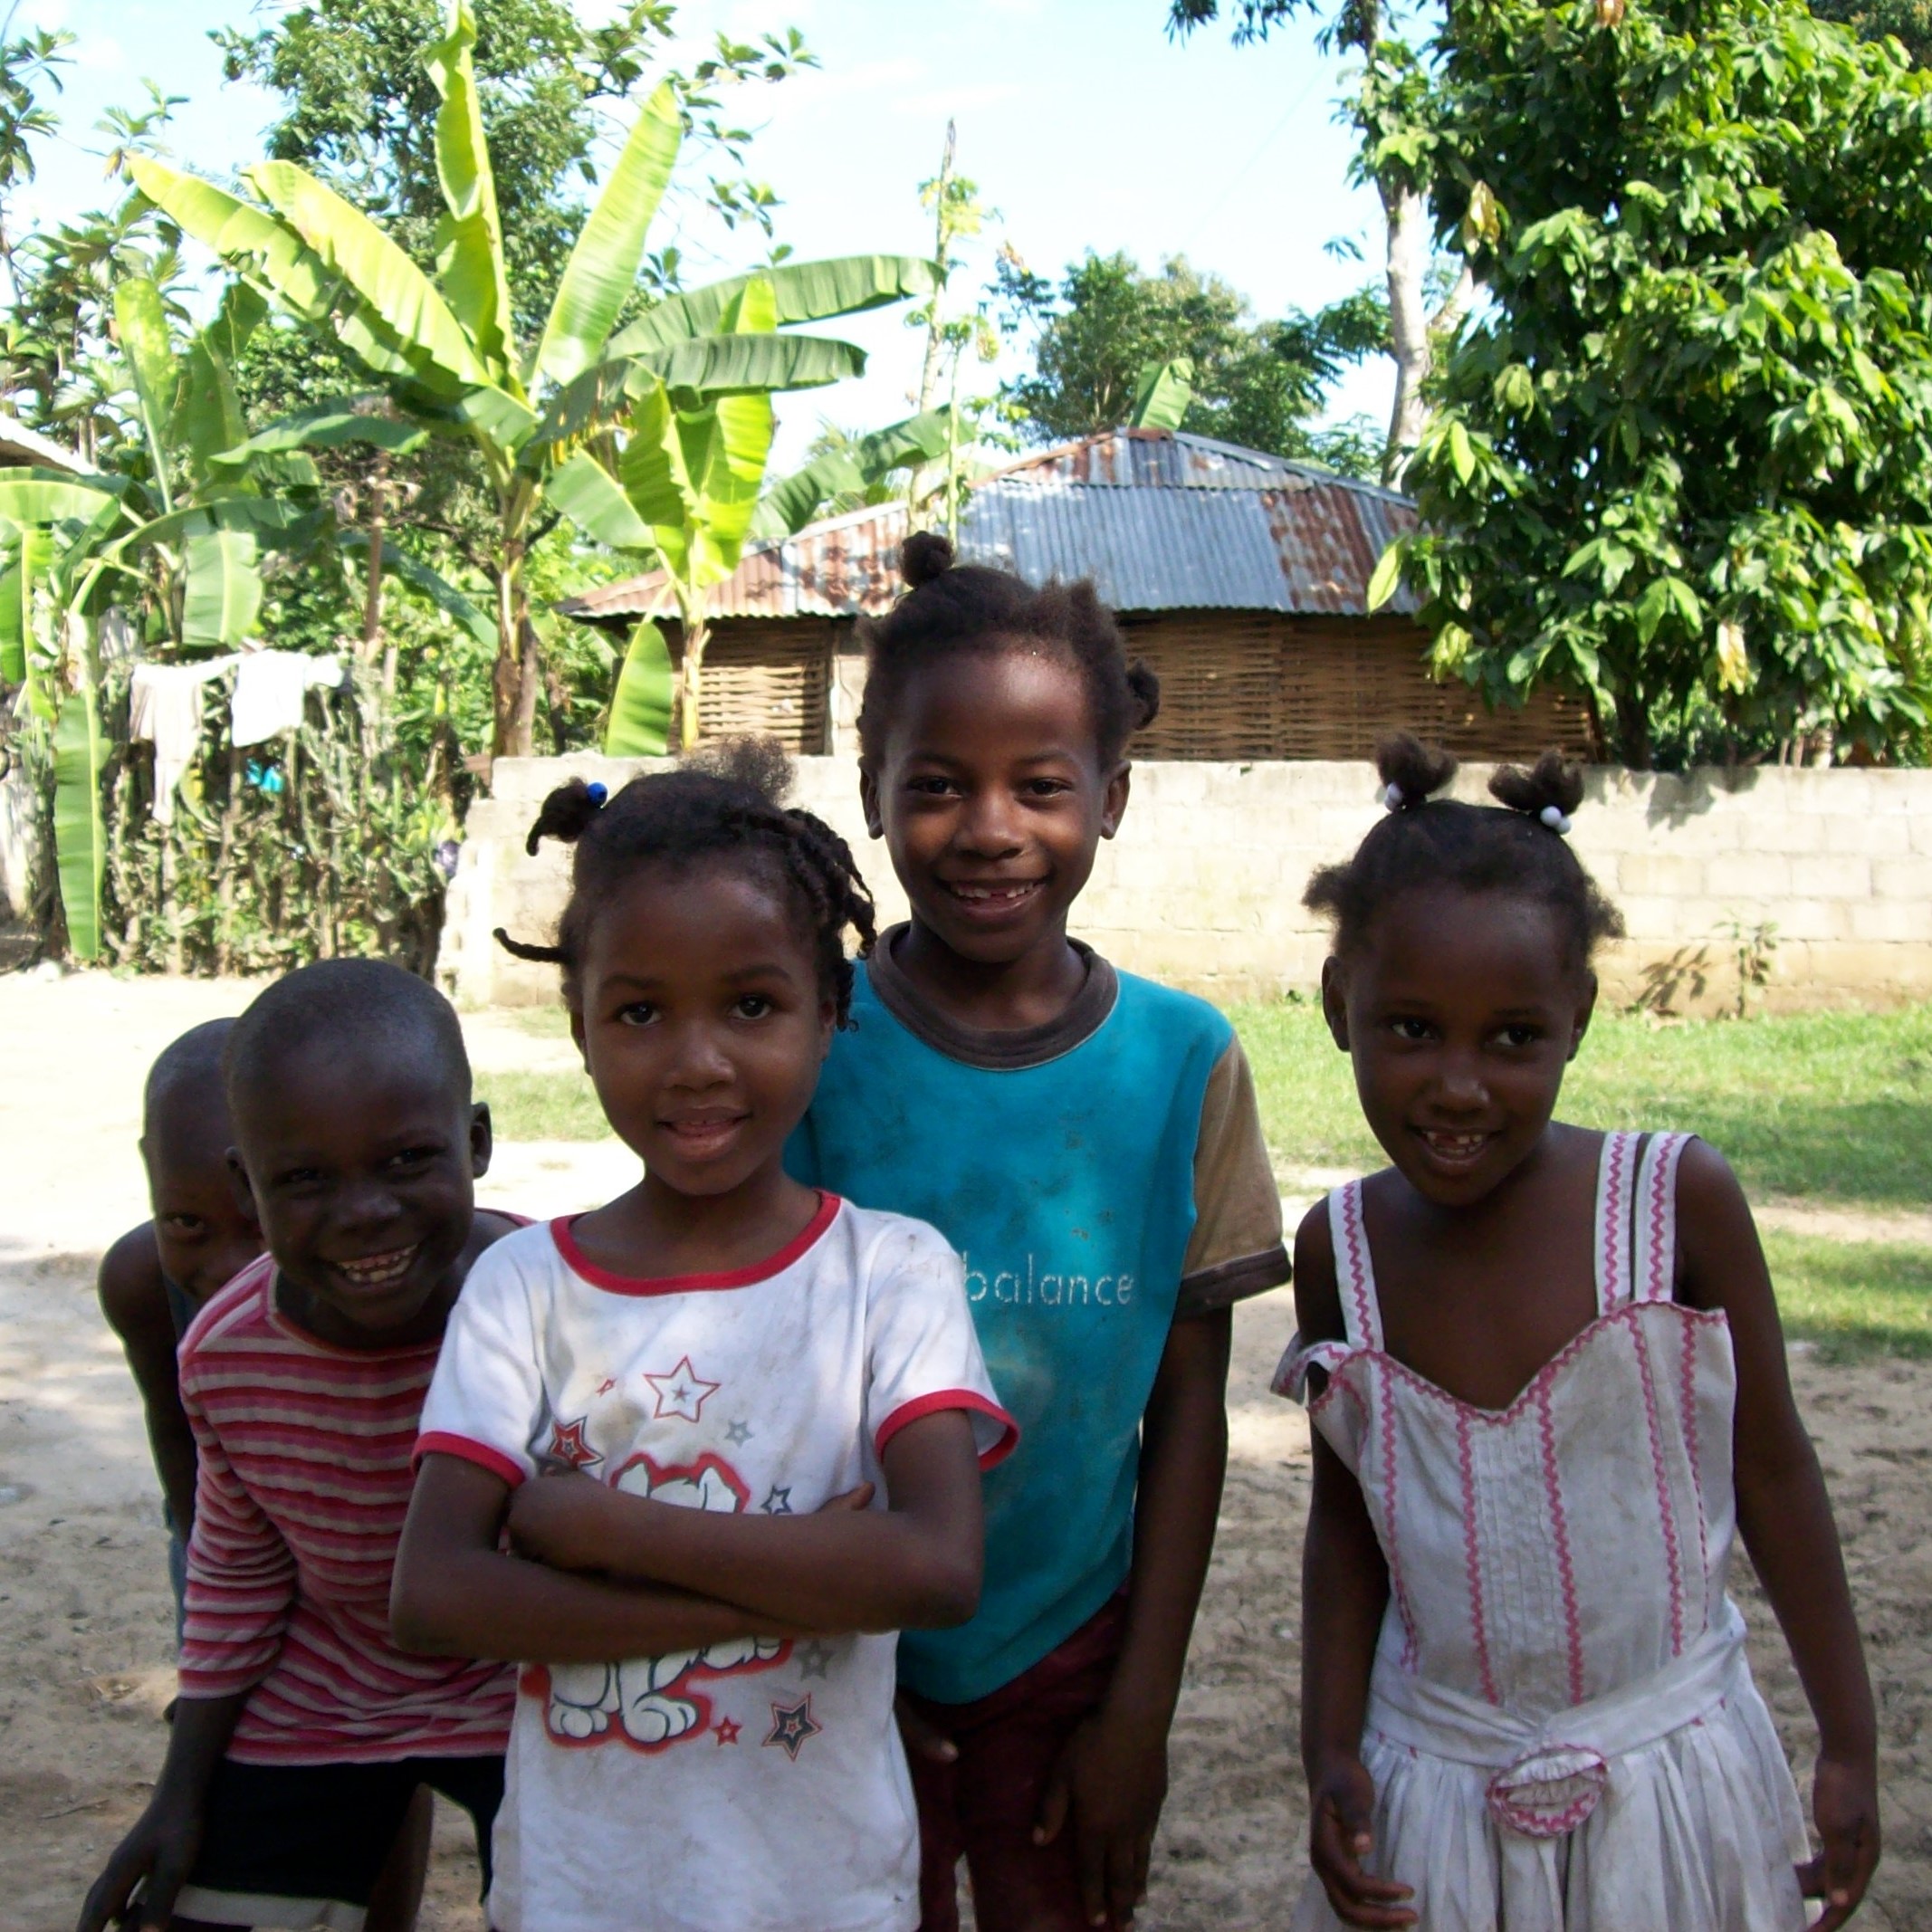 Village children